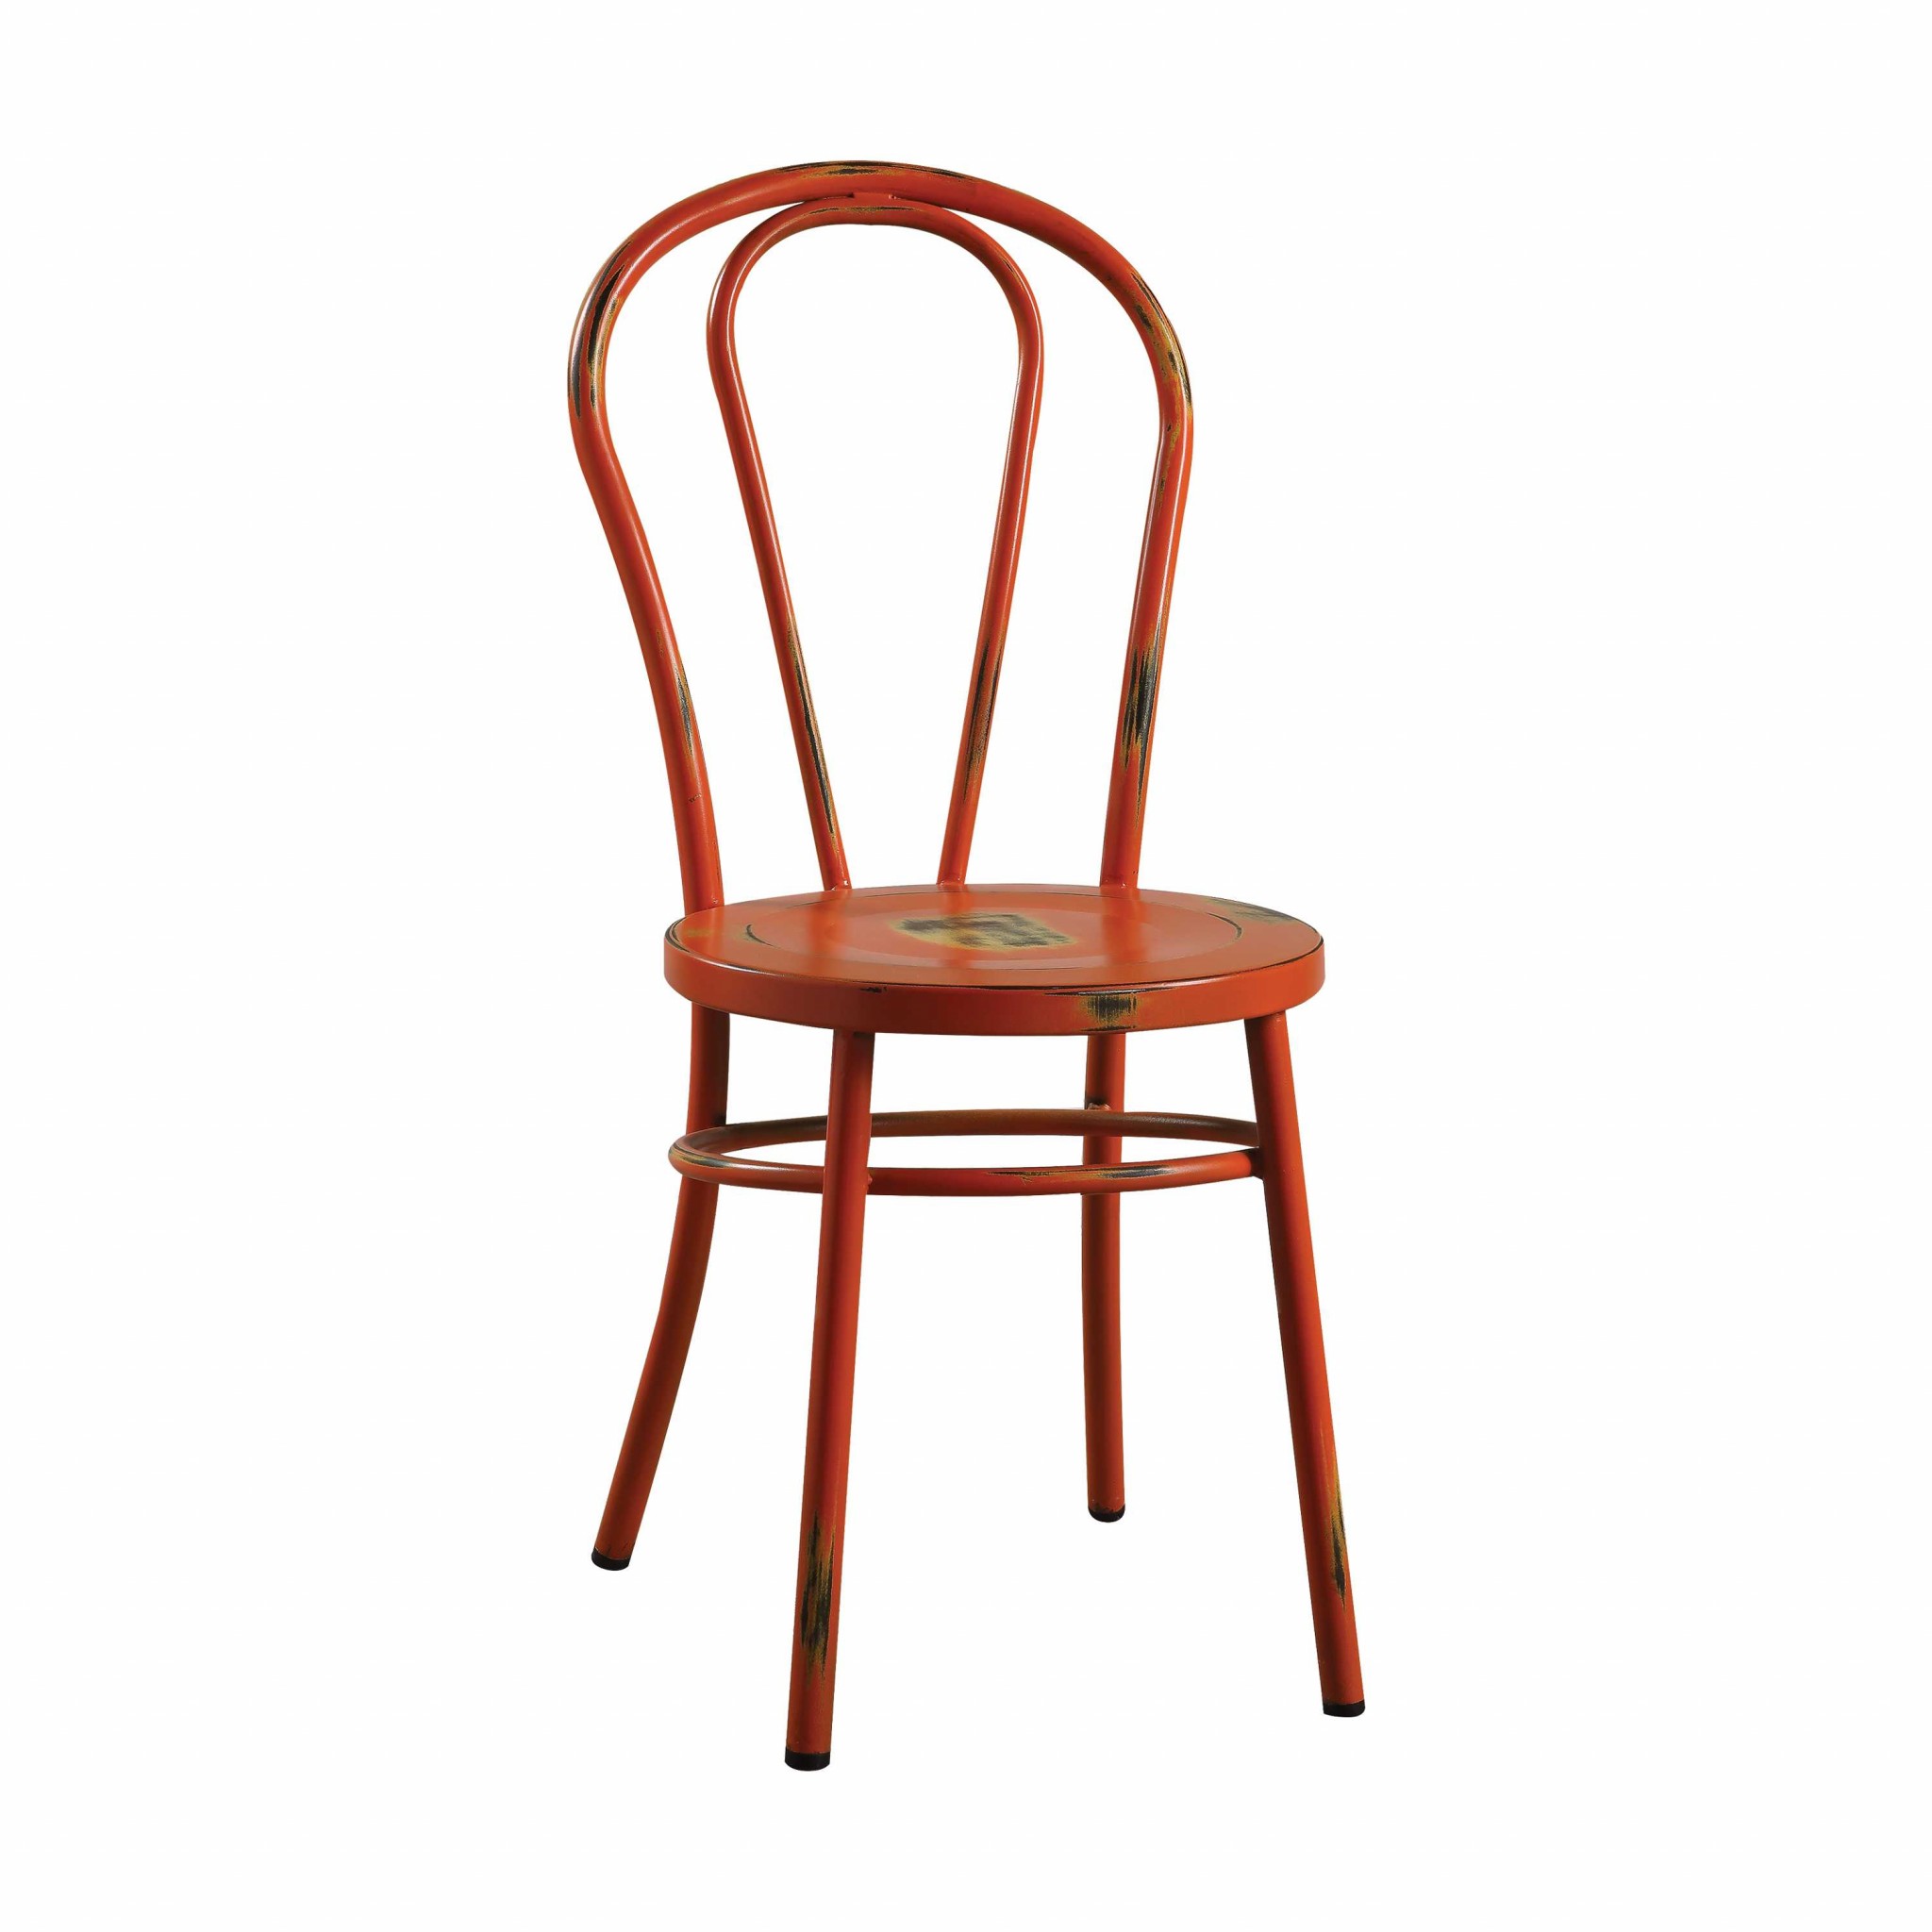 Set of 2 -17" Antiqued Orange Metal Dining Chairs